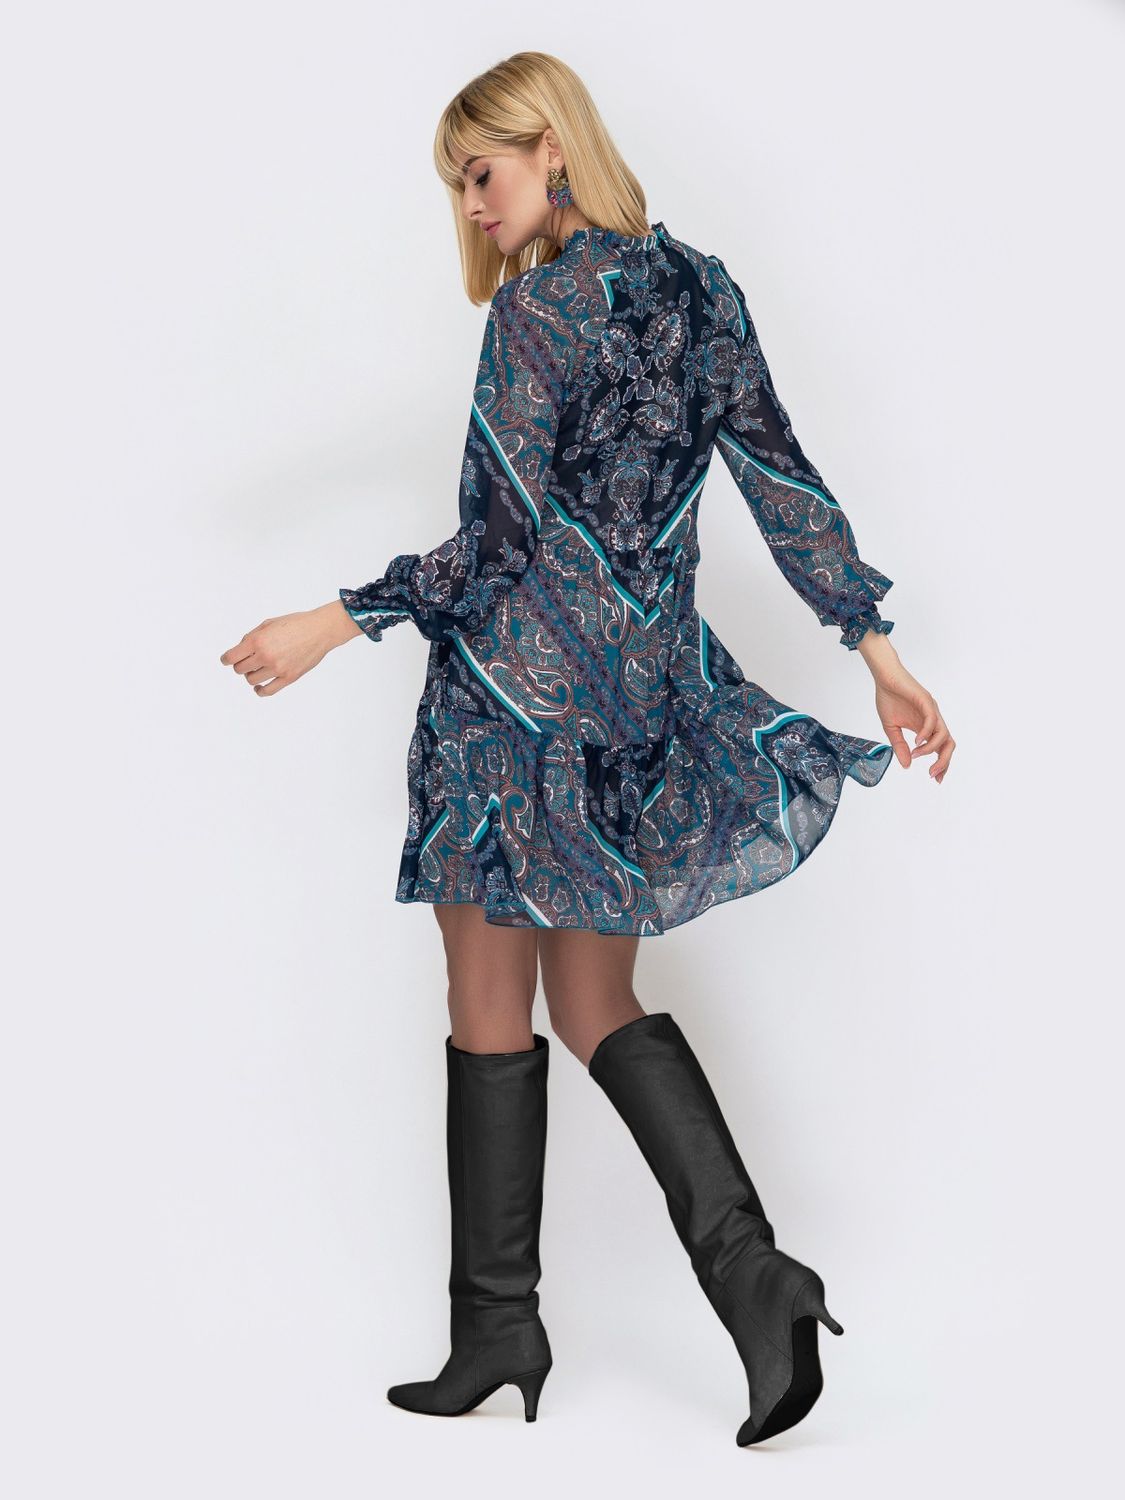 Шифоновое платье бирюзового цвета с широким воланом - фото